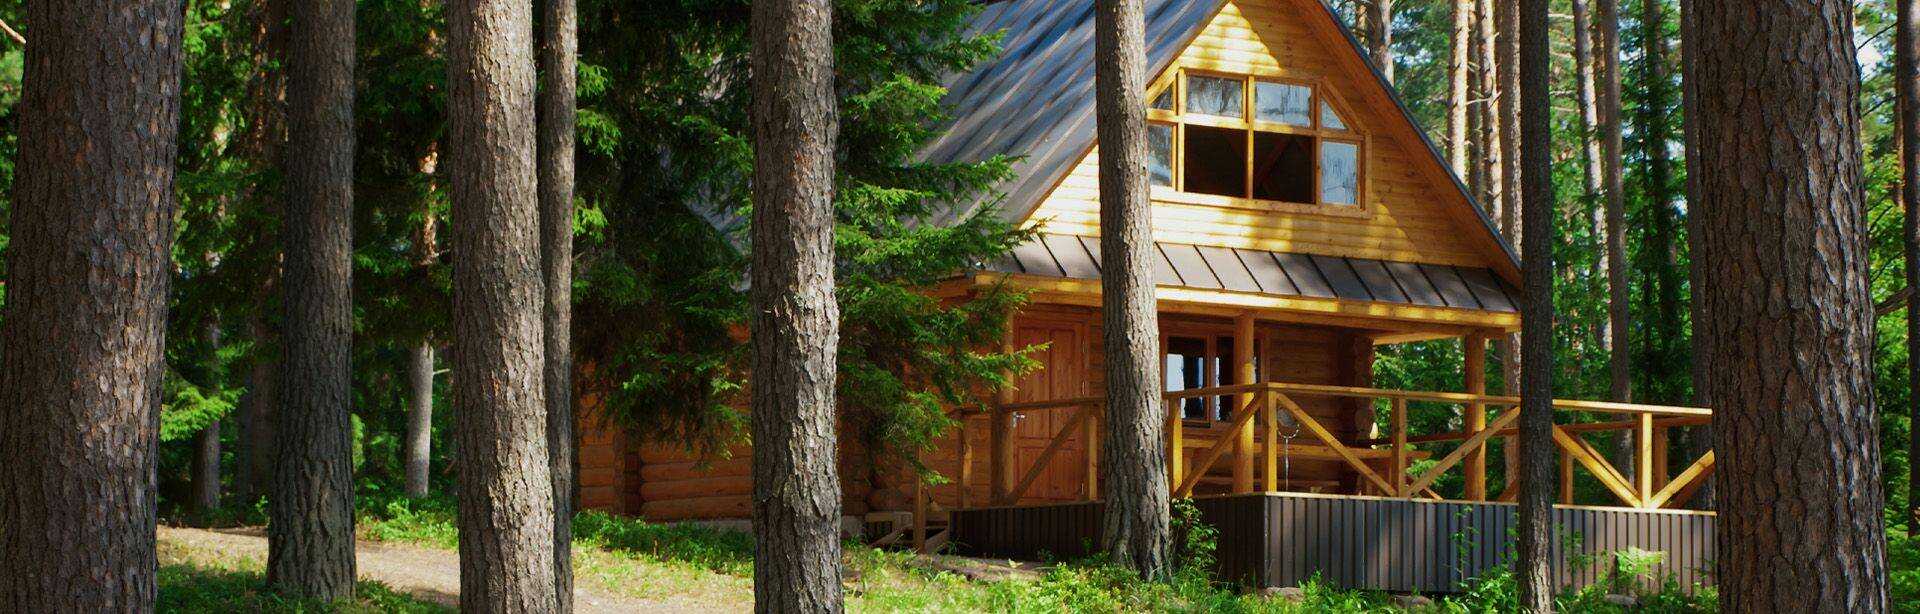 Drewniany domek w lesie, weranda z drewna - Slajd #2